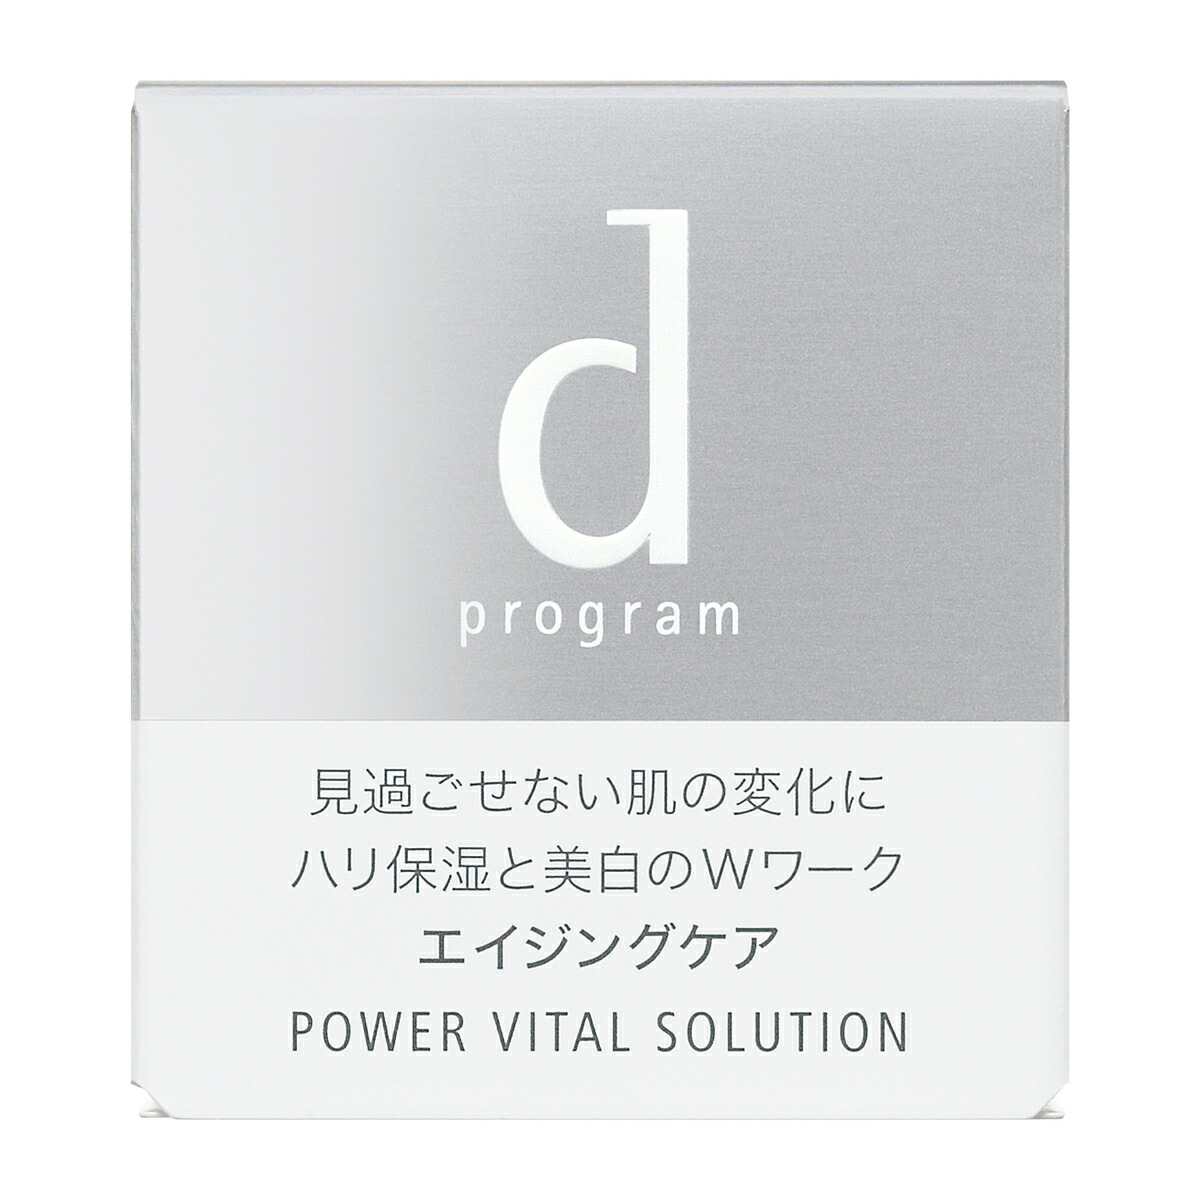 資生堂 Dプログラム パワーバイタル ソリューション  25g 二個セット新品